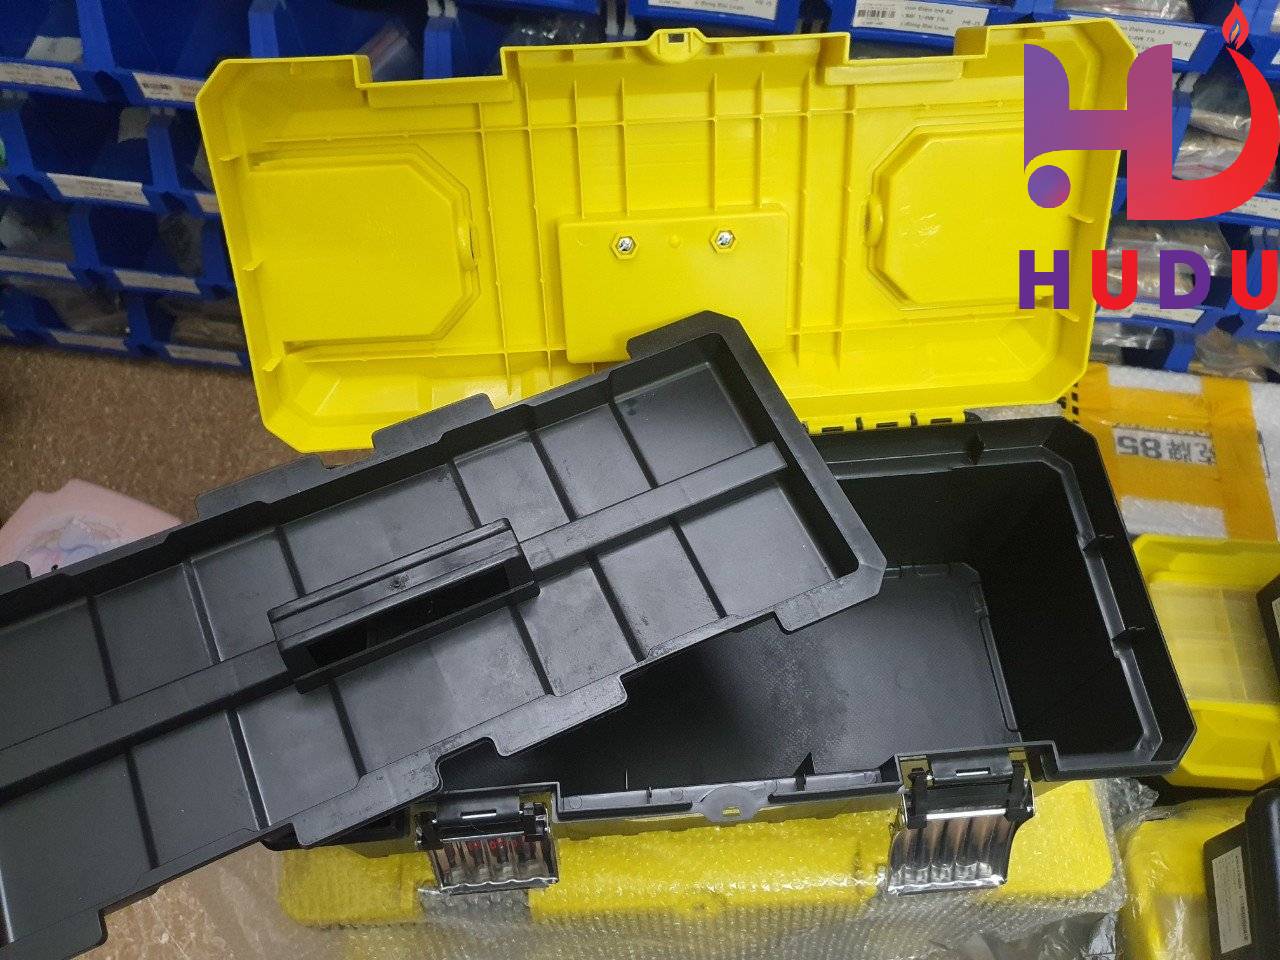 Linh kiện Hudu cung cấp hộp đựng đồ nghề 20inch cao cấp đảm bảo chất lượng tốt